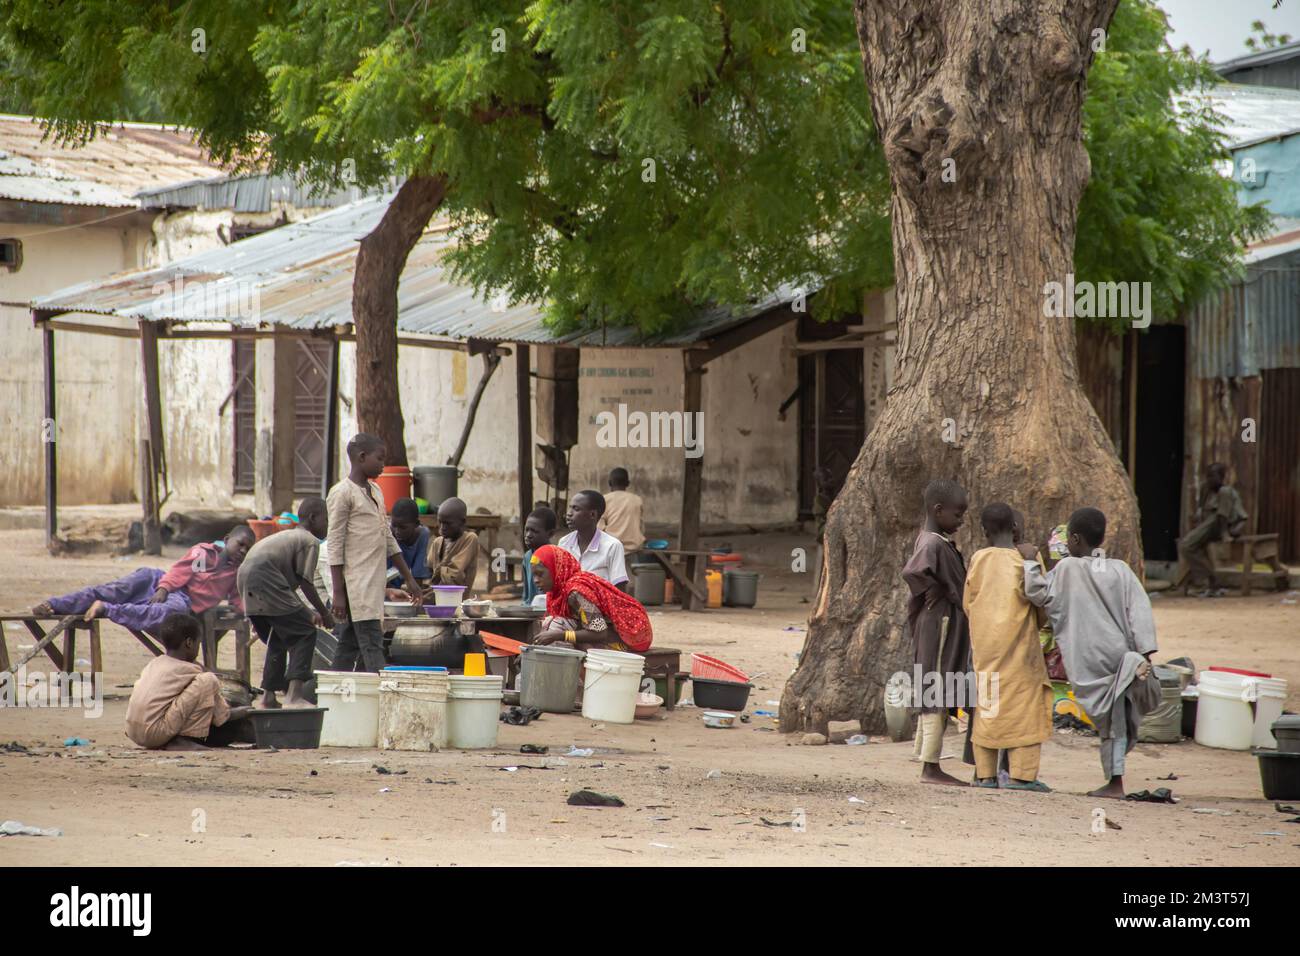 Life Street Fotoszene aus der afrikanischen Straße, Frau, die Essen in einer primitiven Straßenküche verkauft, umgeben von kleinen Kindern, die um sie herum spielen Stockfoto